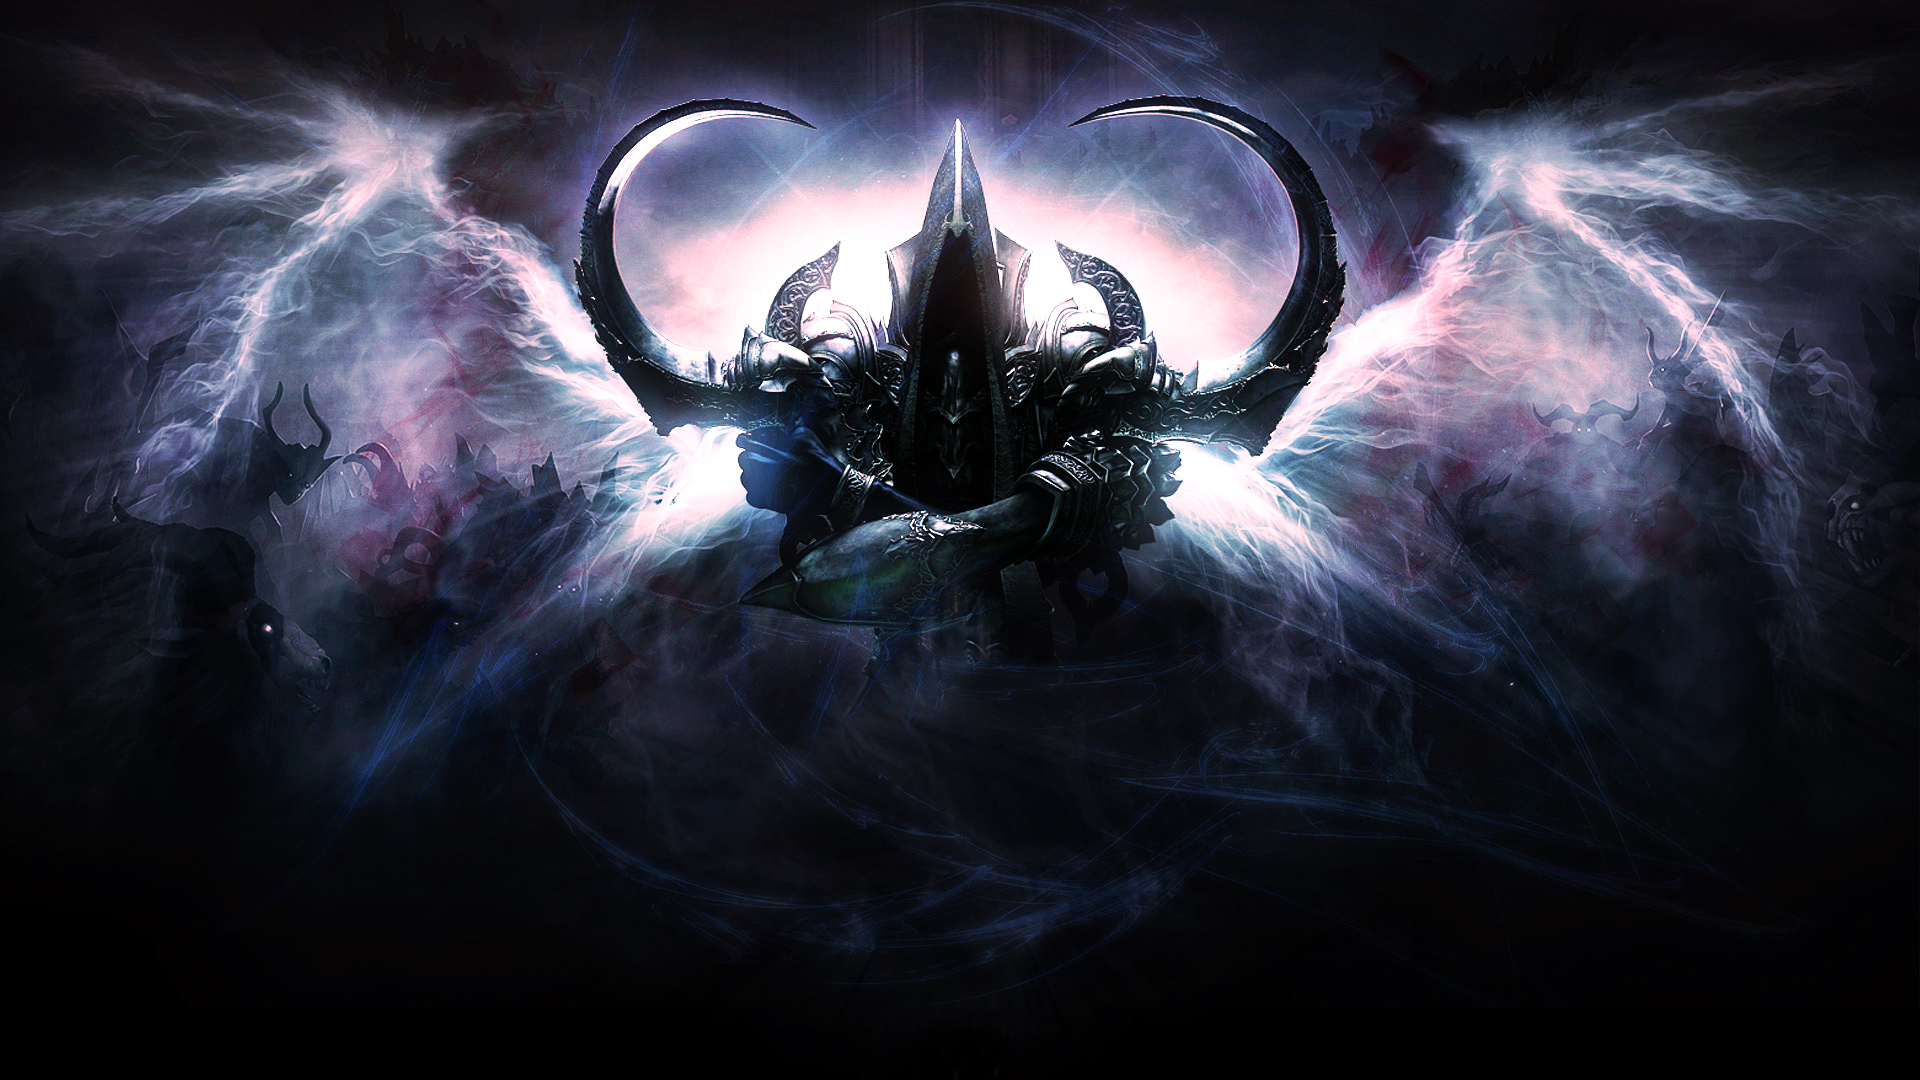 Diablo 3 - Reaper of Souls Wallpaper by NIHILUSDESIGNS on DeviantArt